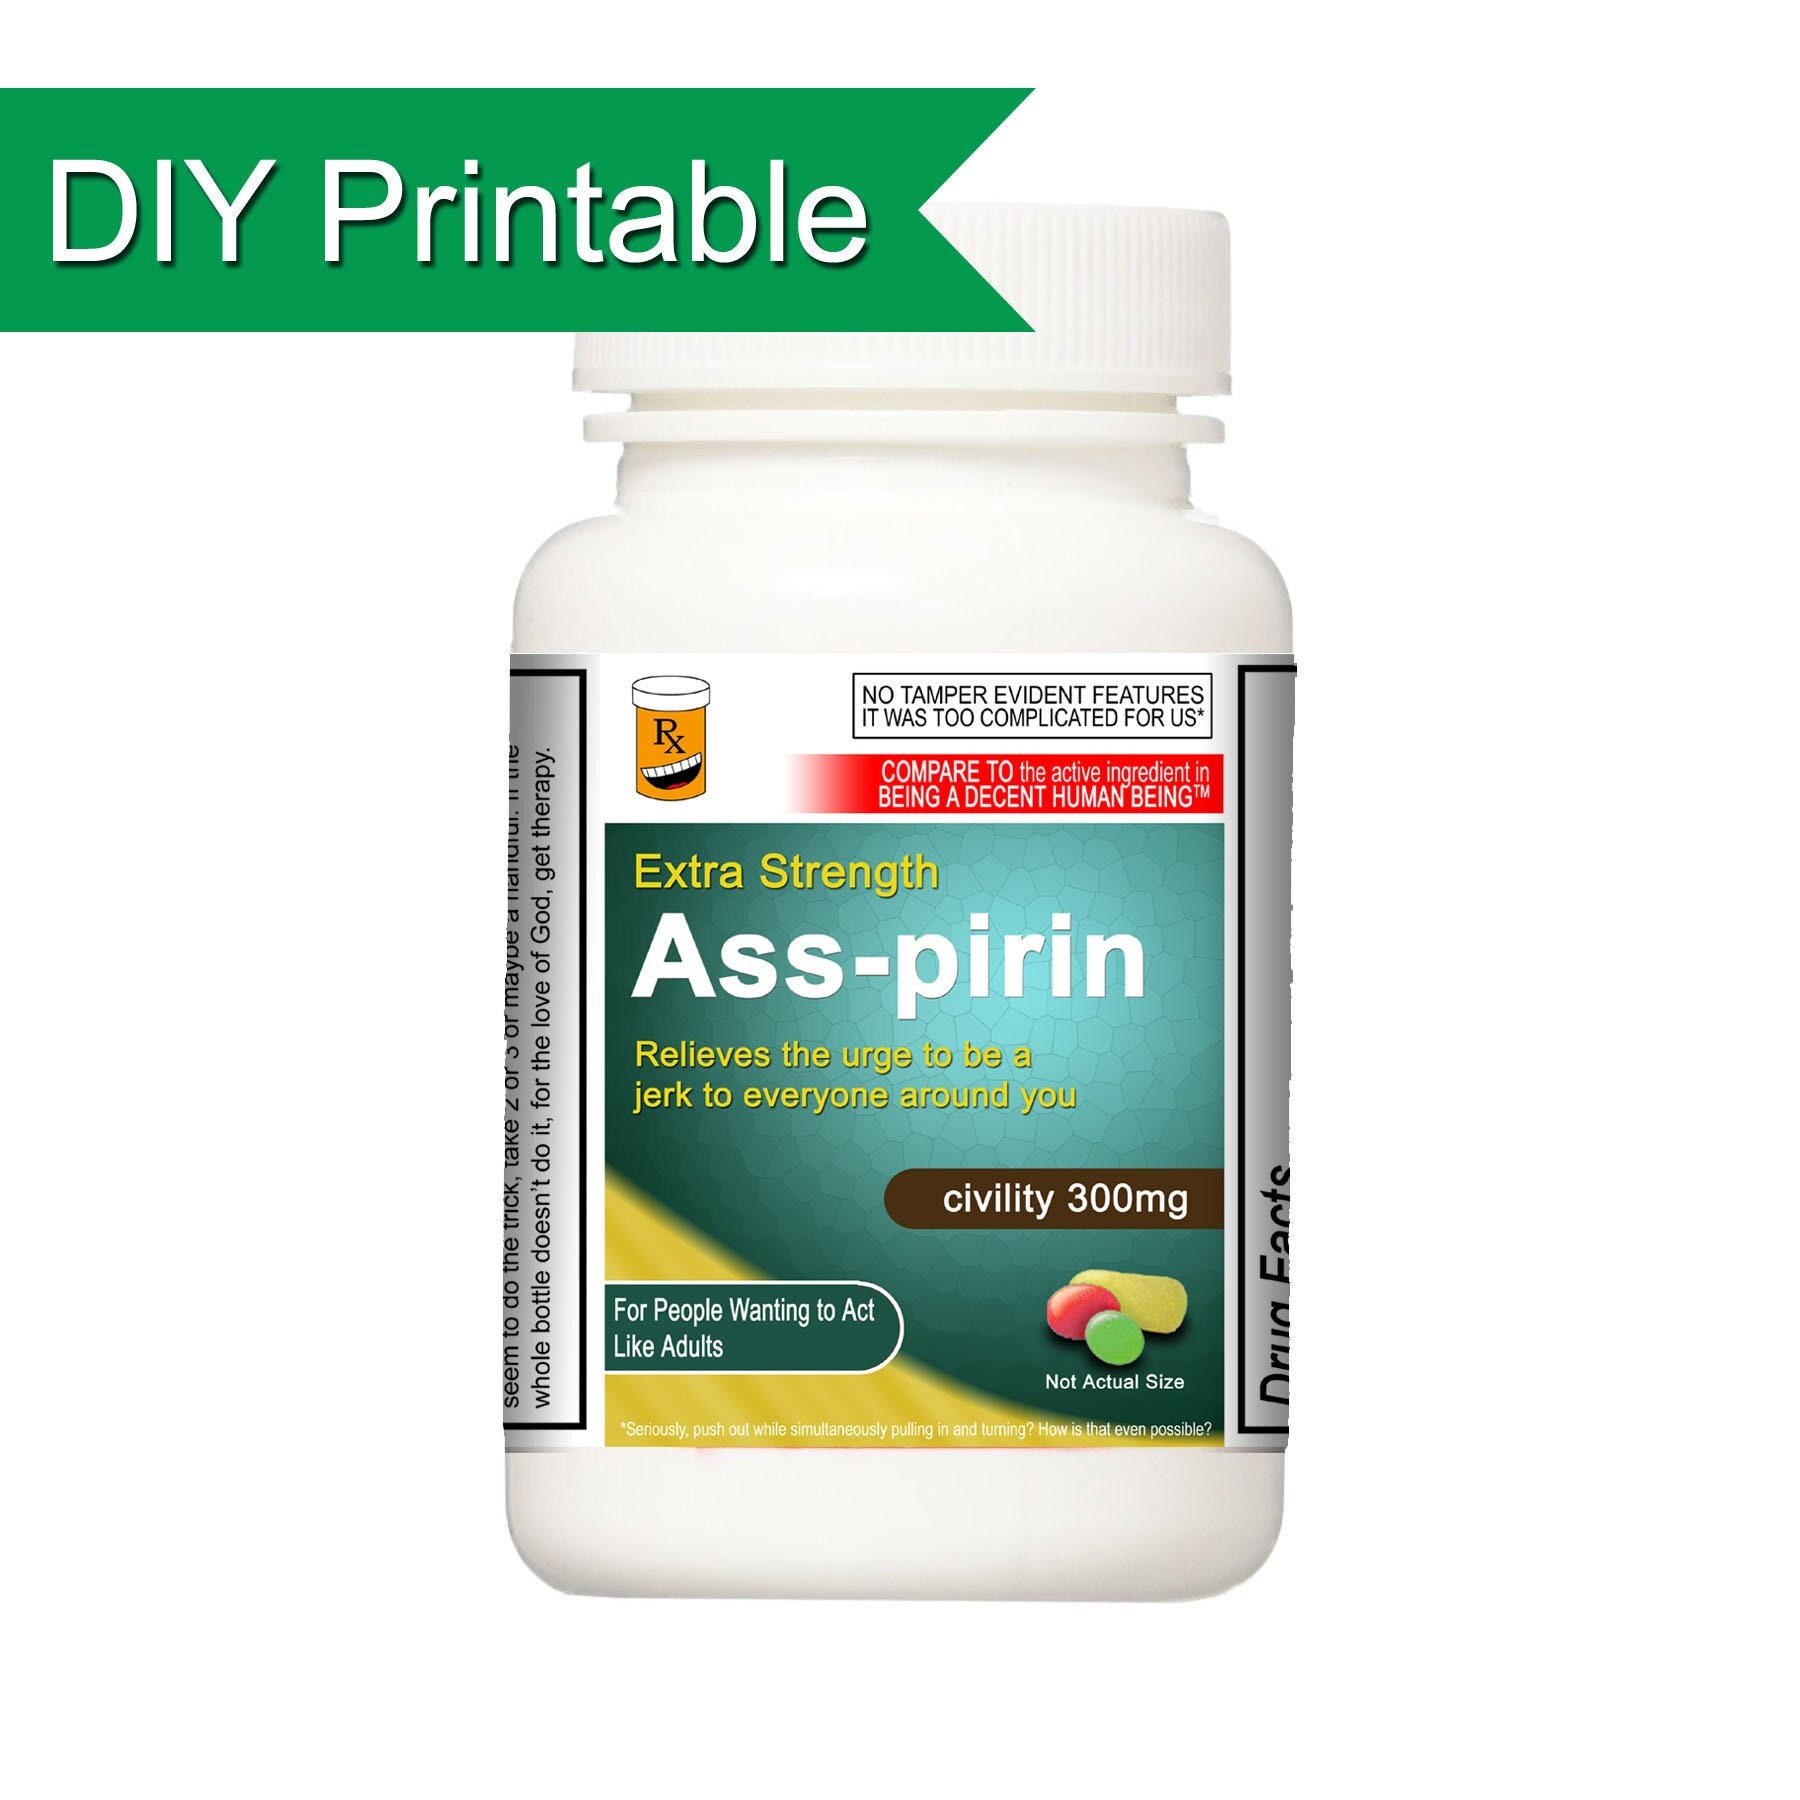 Ass-pirin Prank Pill Bottle Download and Print Joke Medicine